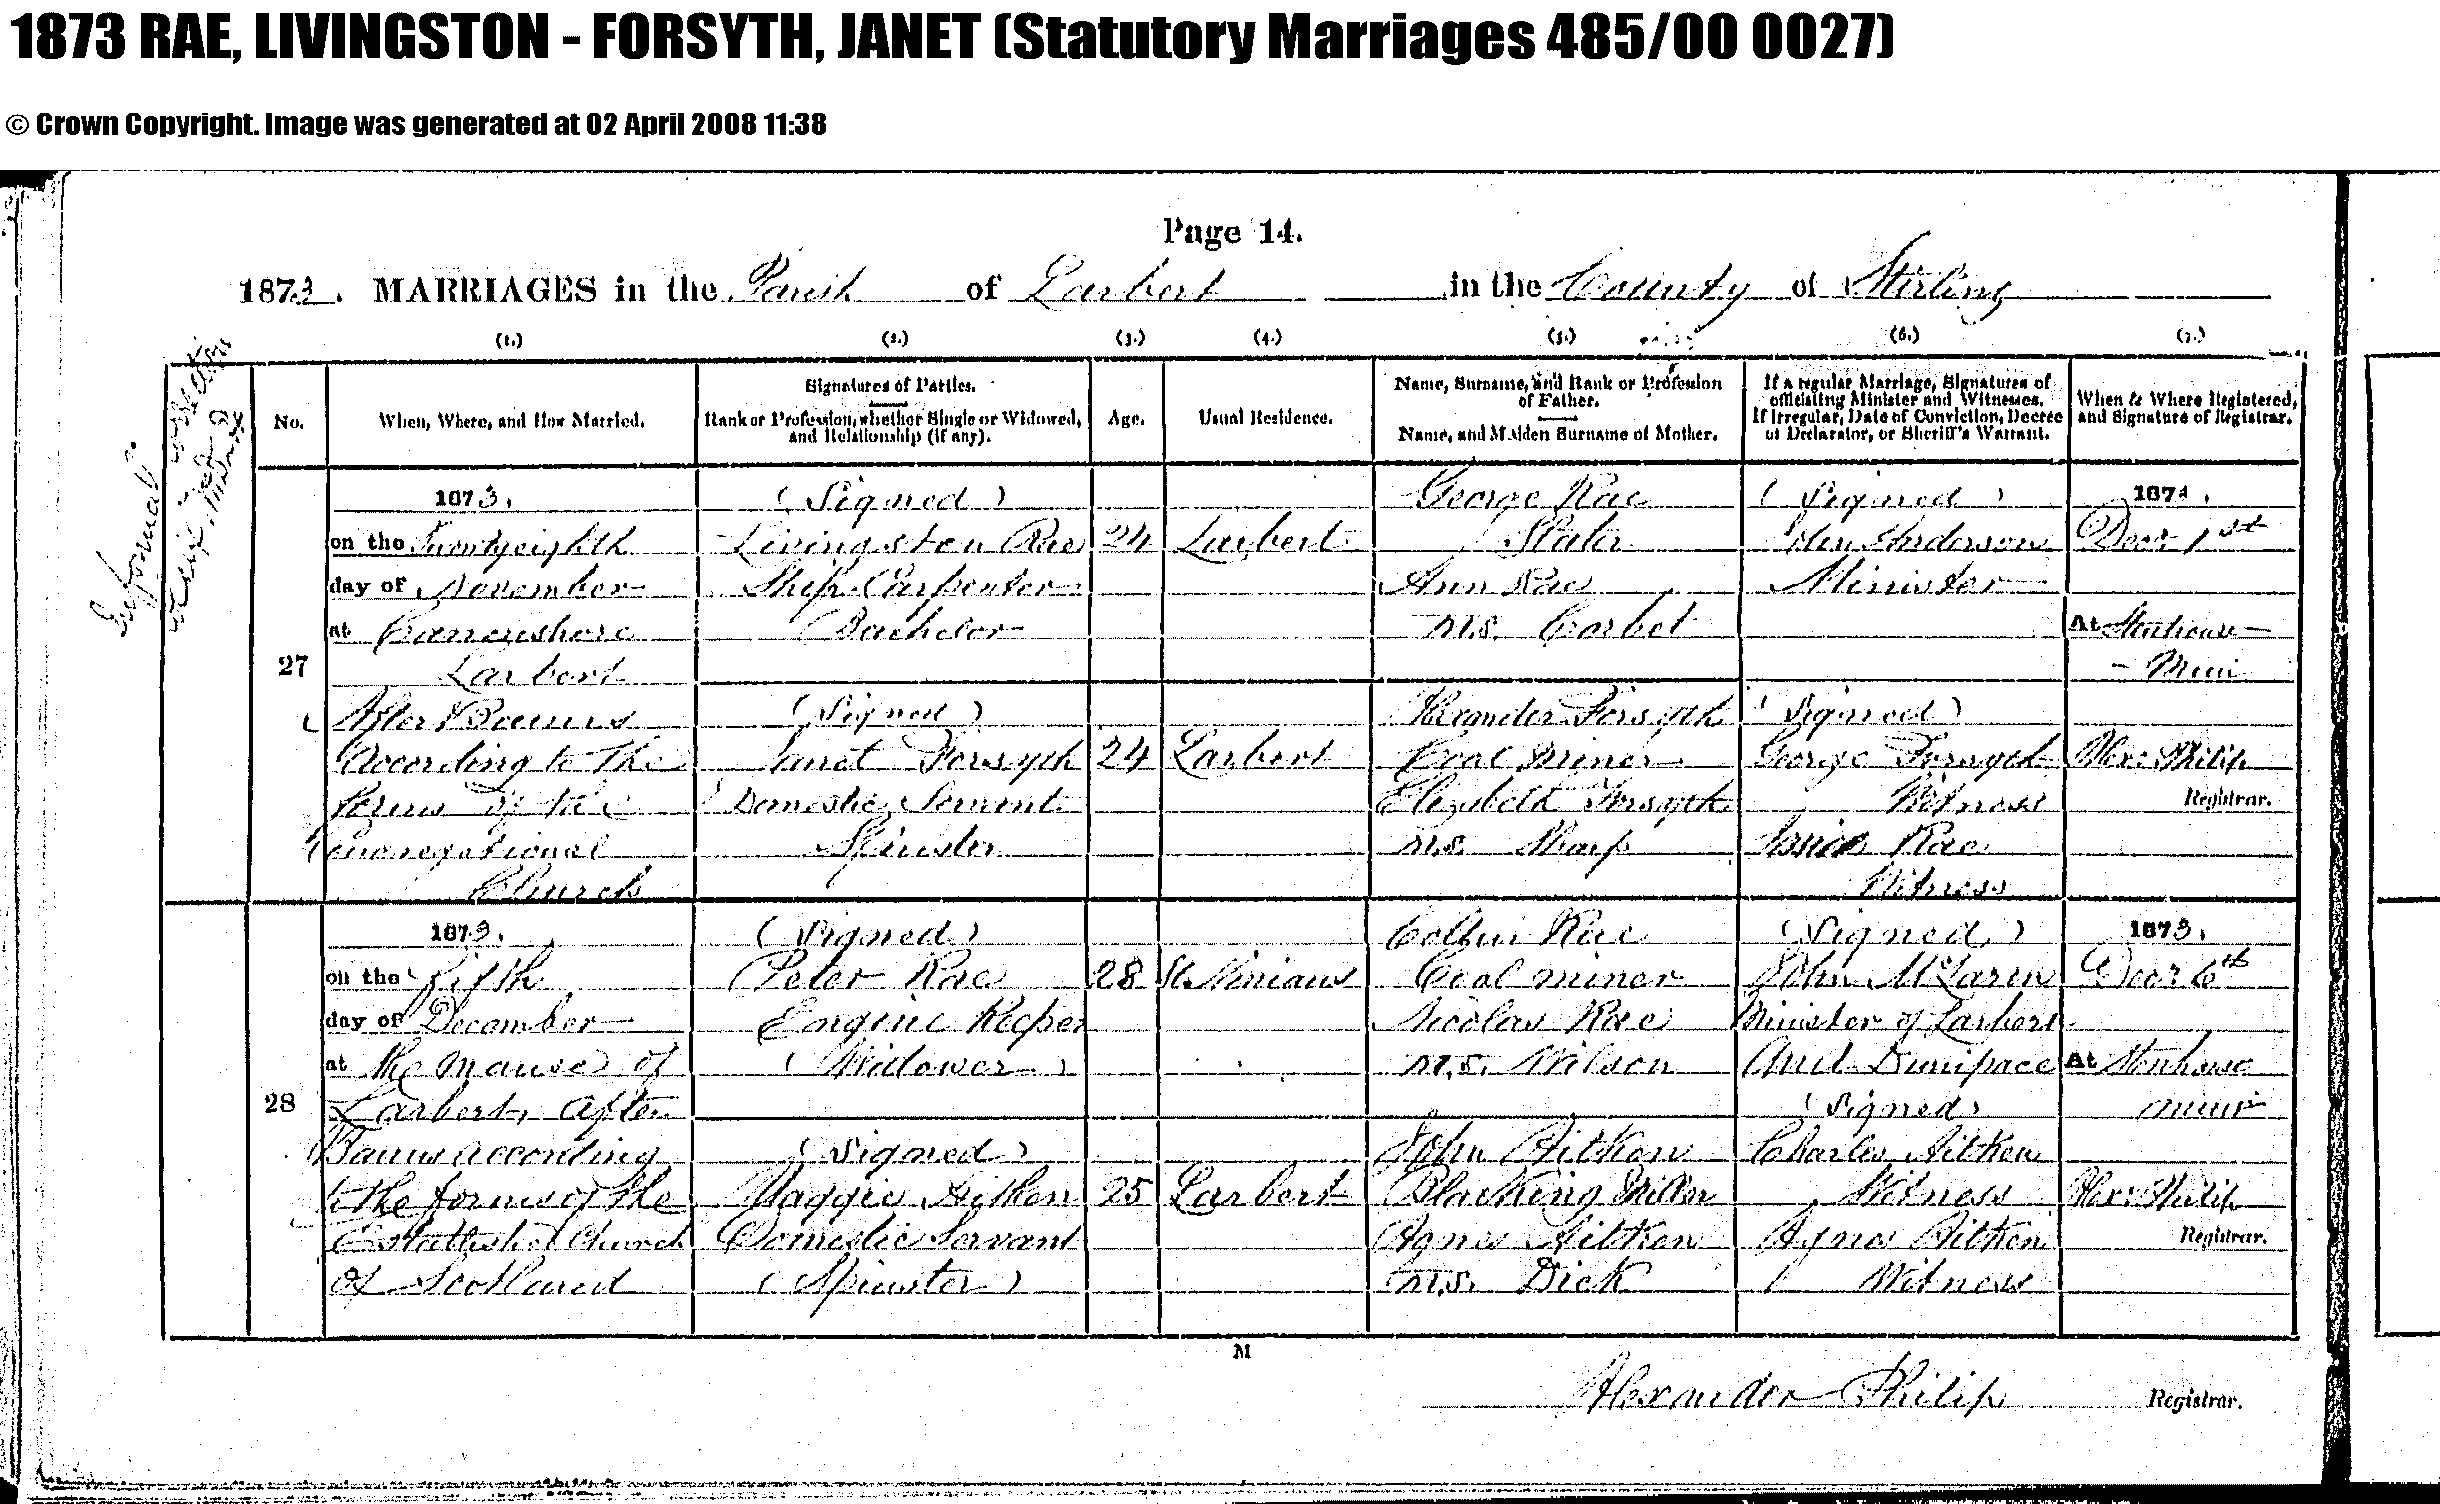 1873 marr. Livingston RAE & Janet FORSYTH